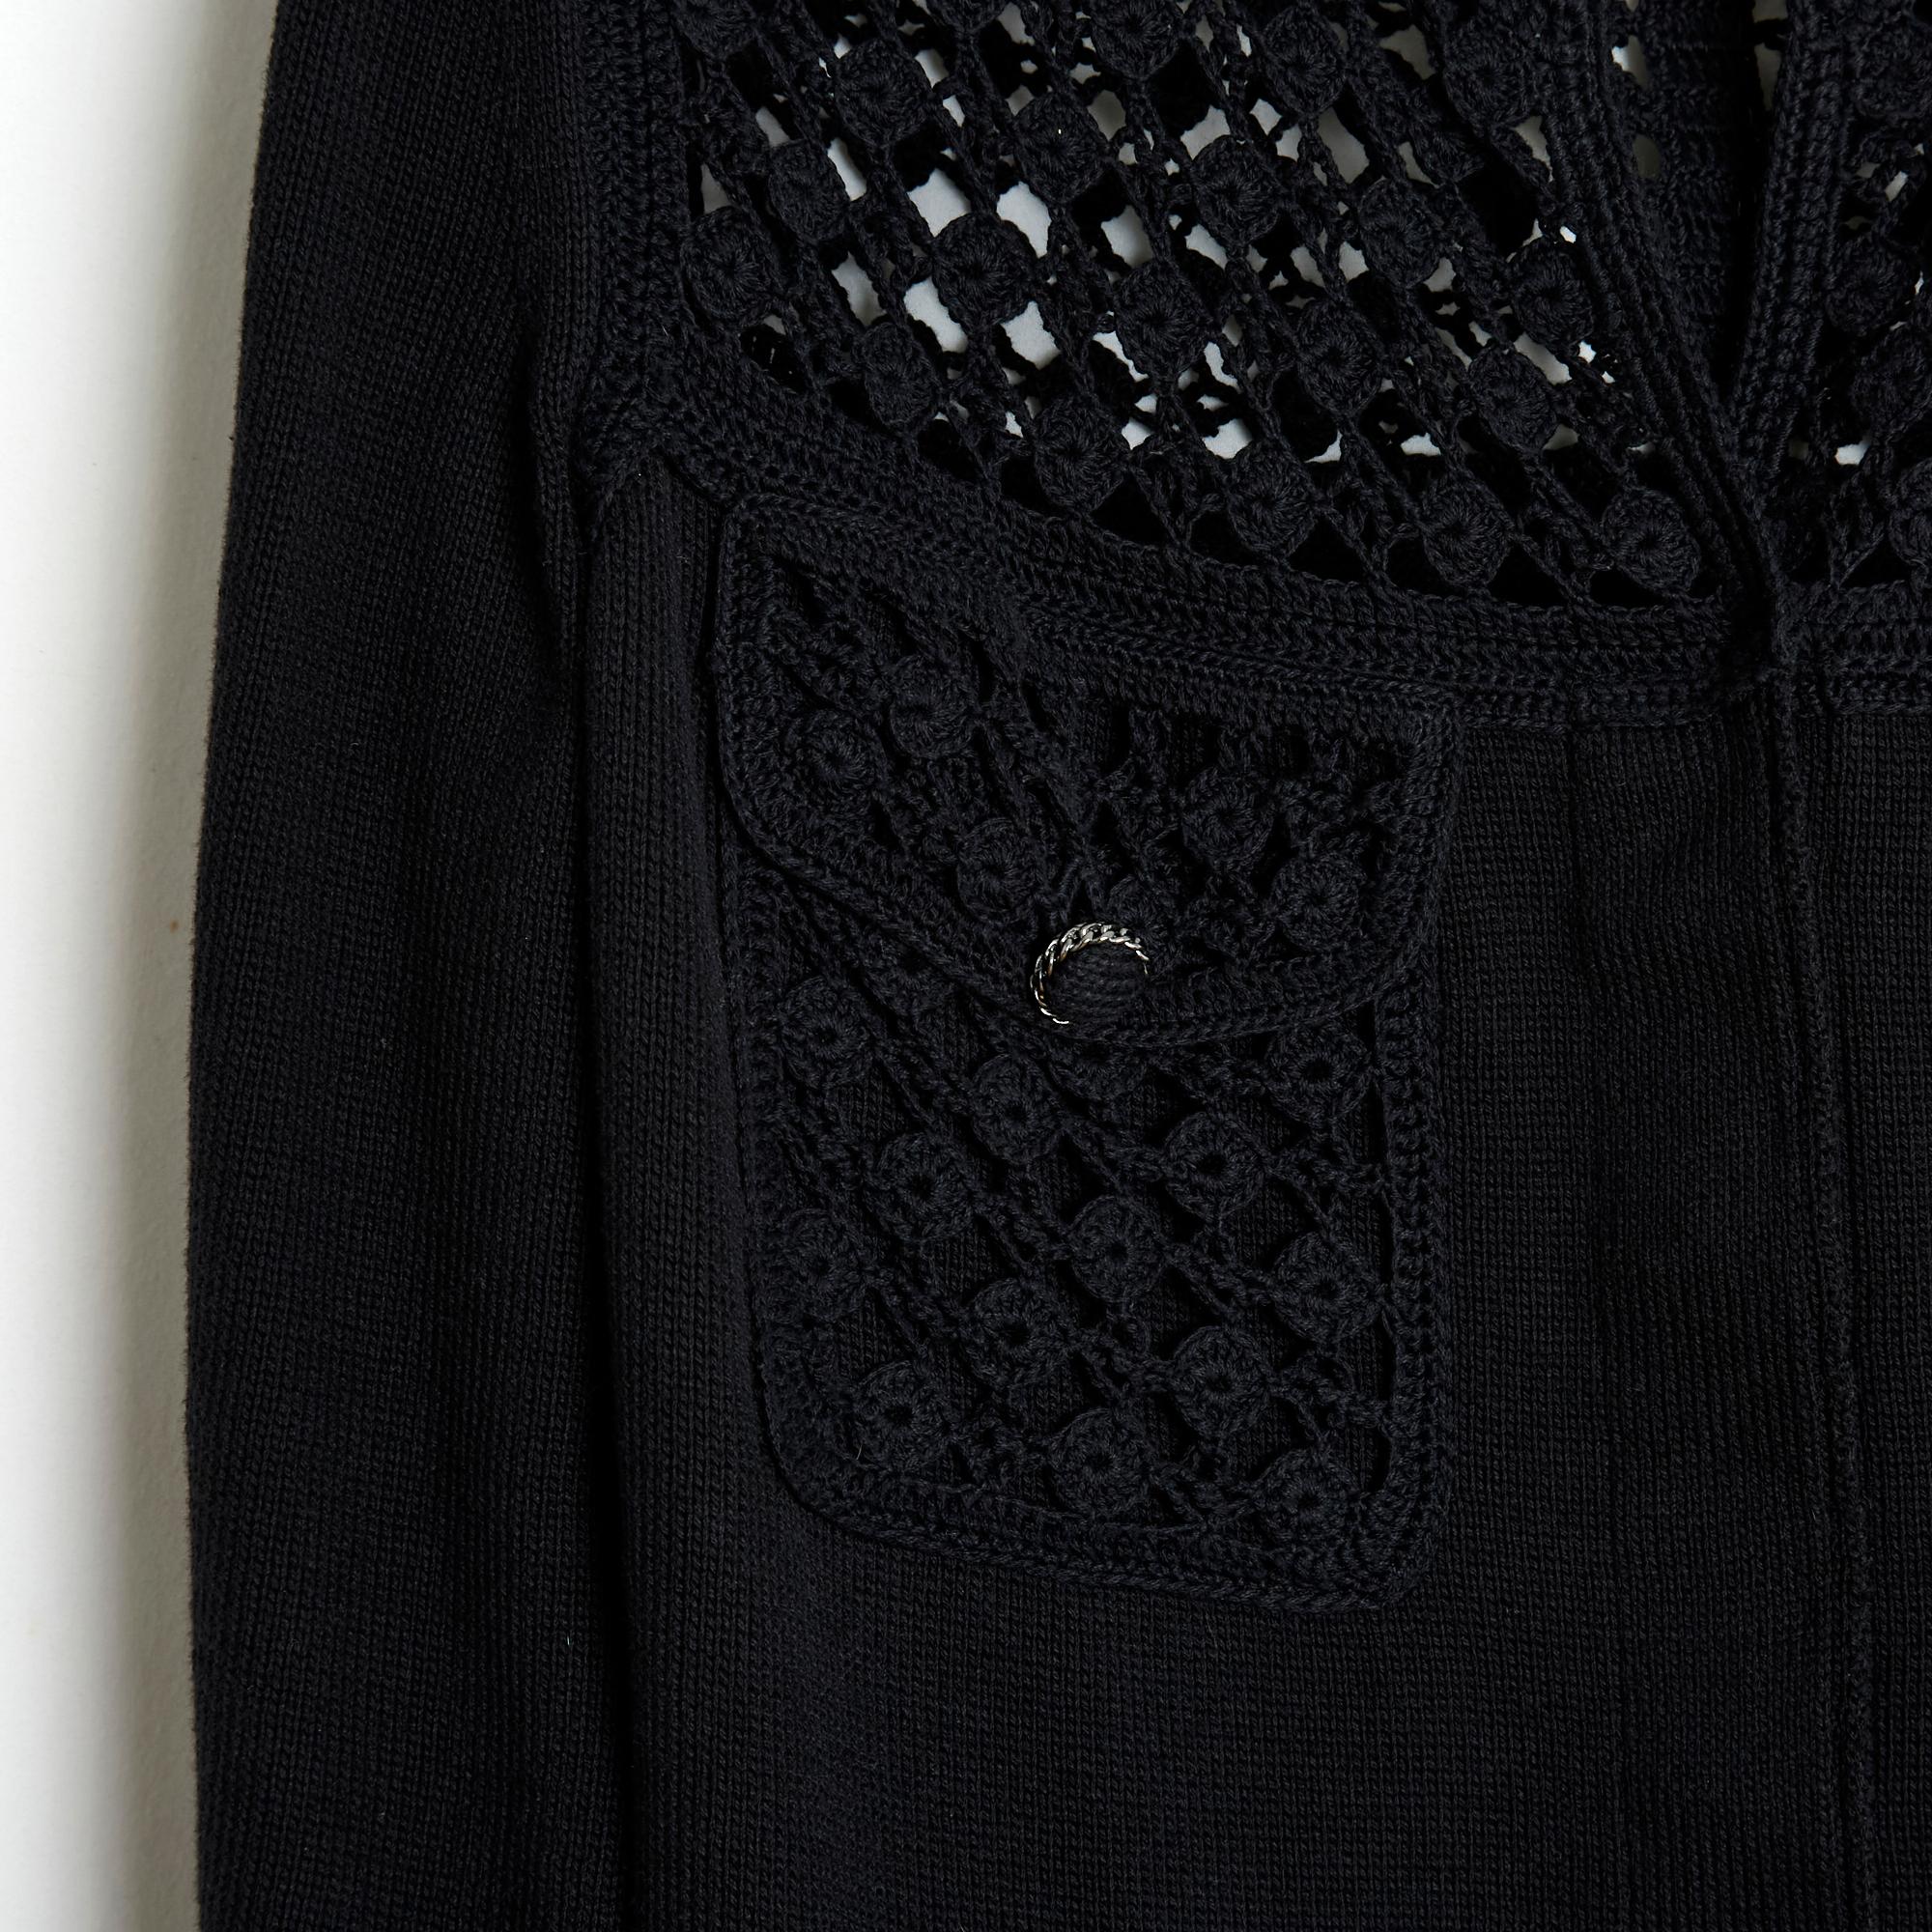 Chanel Strickjacke aus der Spring Summer 2006 Kollektion, wie eine kleine schwarze Jacke aus Baumwollstrick und Häkelarbeit, Rundhalsausschnitt geschlossen mit 4 versteckten Chanel Knöpfen, 2/3 Ärmel, 4 Pattentaschen geschlossen mit einem Knopf,